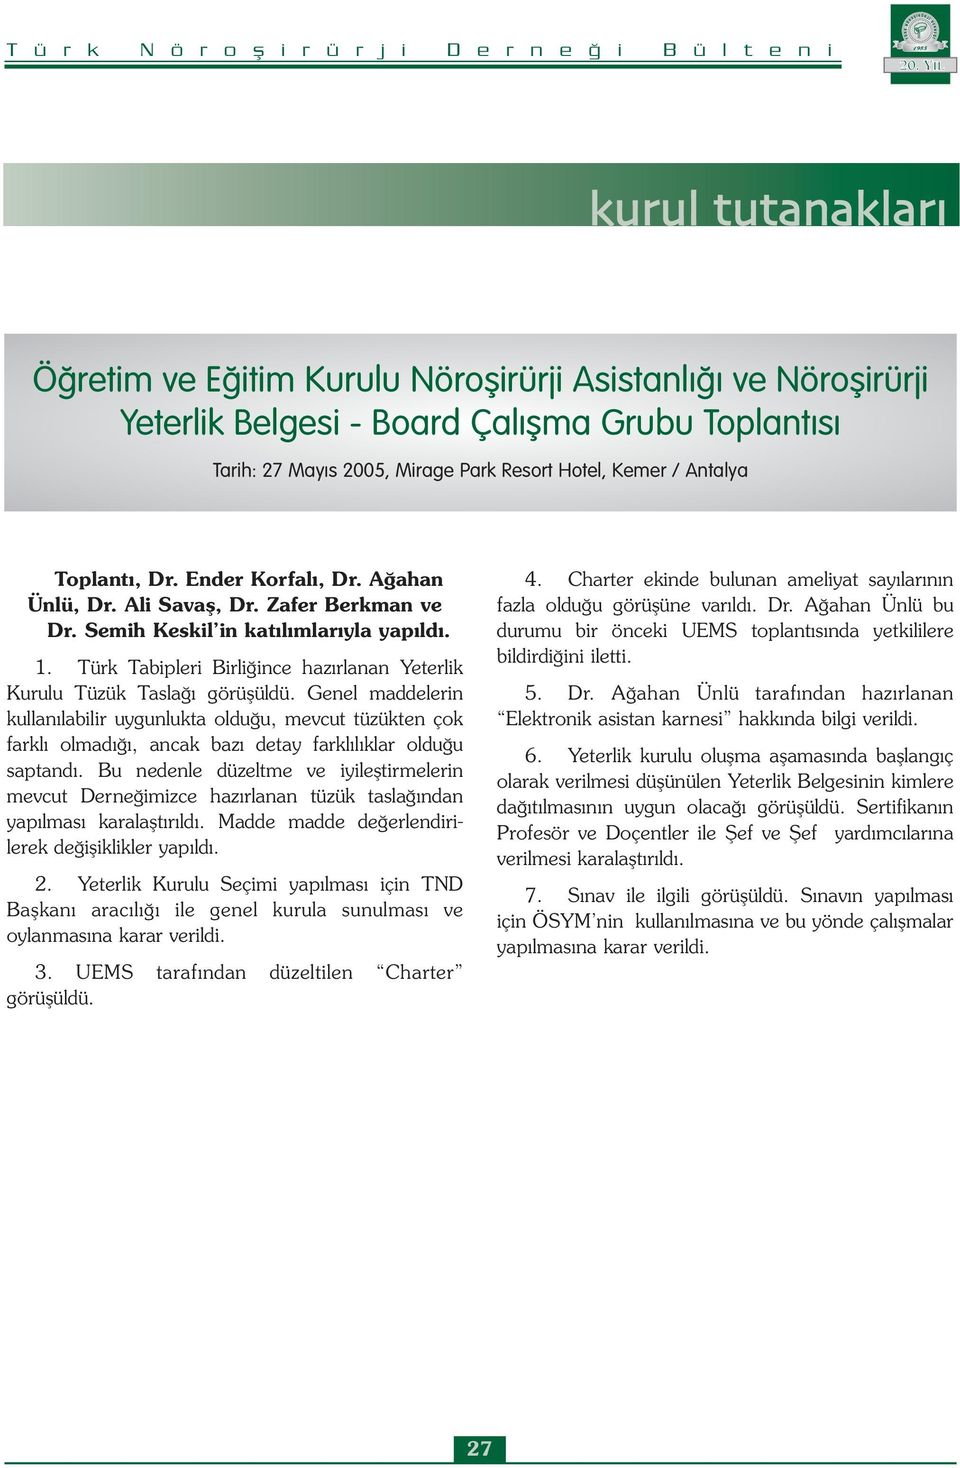 Türk Tabipleri Birliğince hazırlanan Yeterlik Kurulu Tüzük Taslağı görüşüldü.